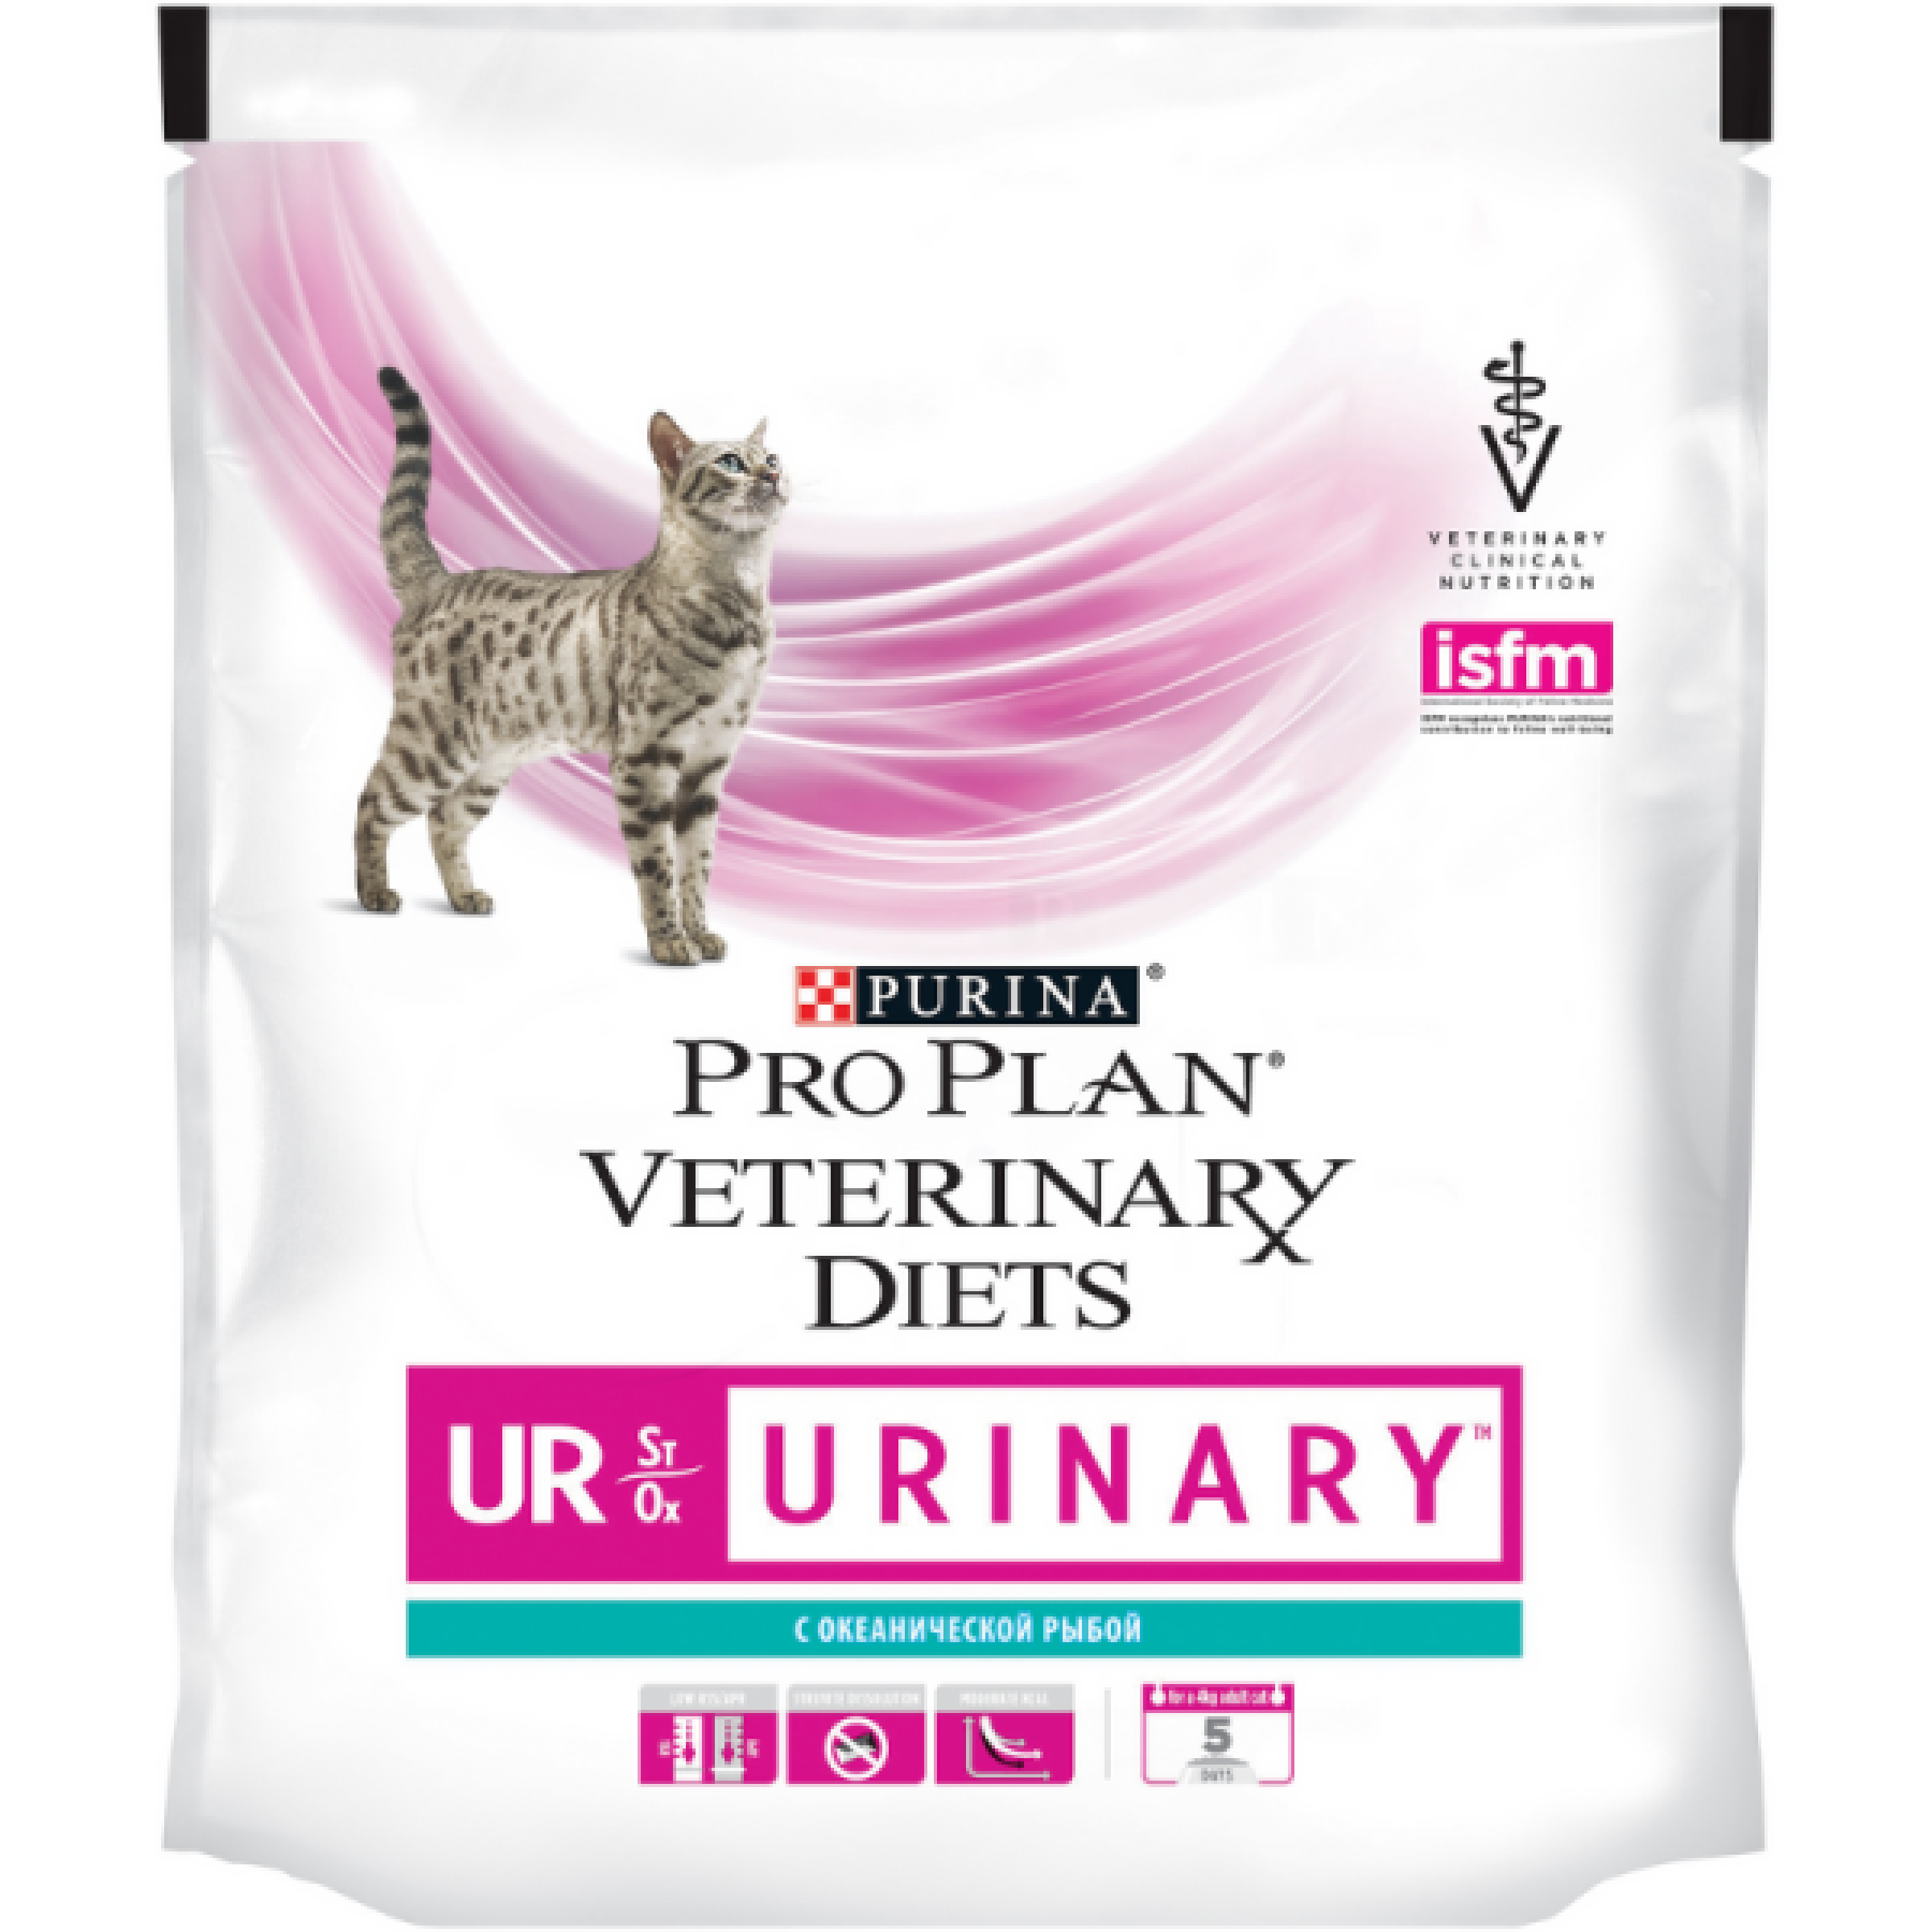 Сухой корм для кошек Purina Pro Plan Veterinary Diets UR Urinary диетический при МКБ с океанической рыбой, 350 г